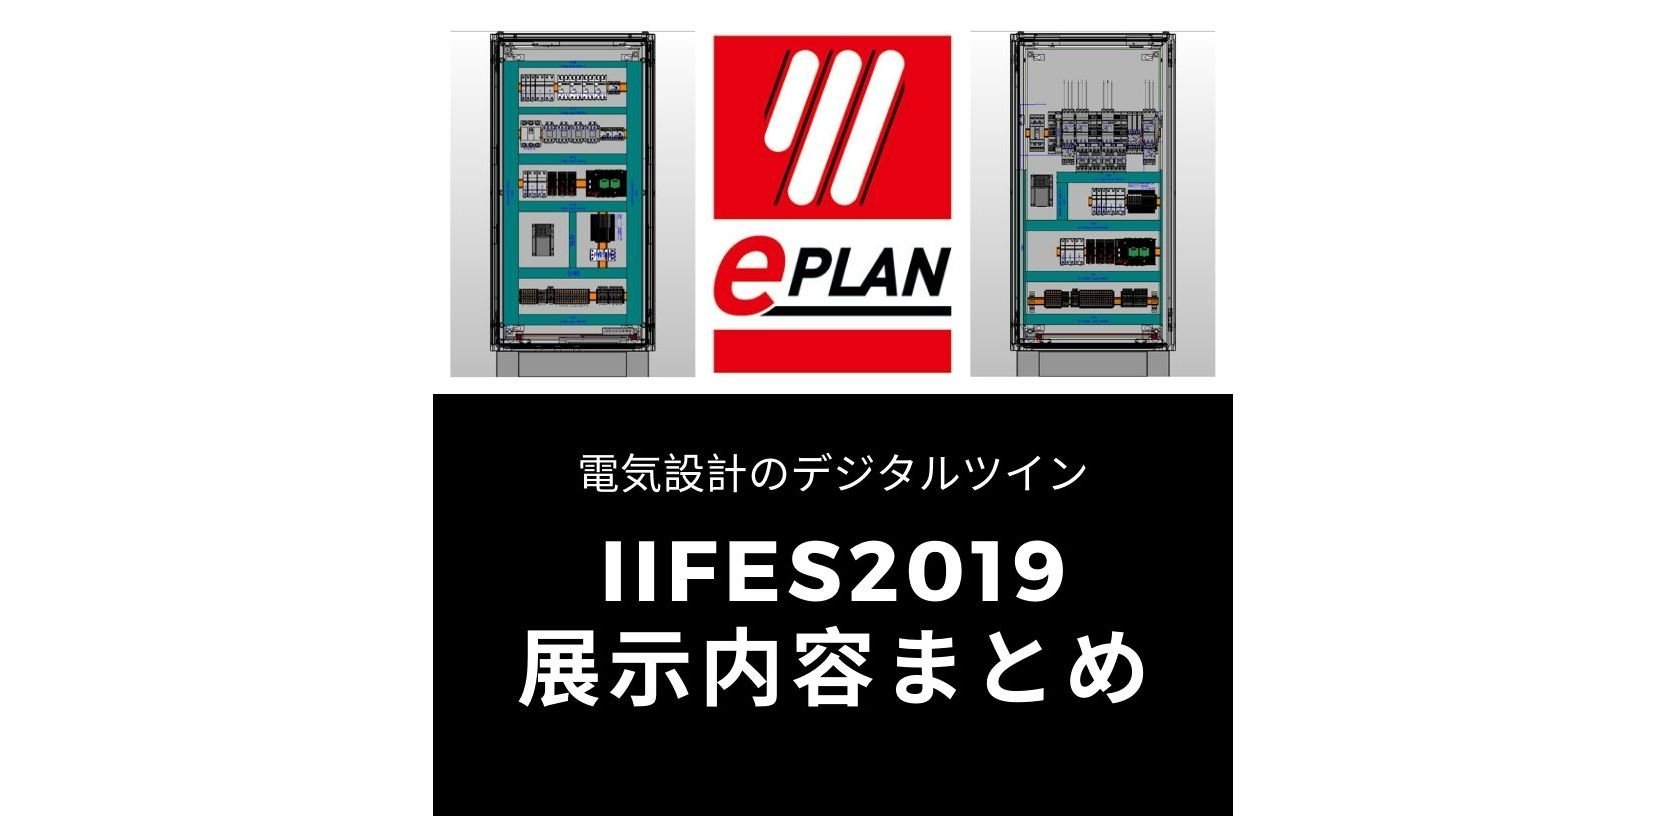 【展示内容まとめ】IIFES2019 - 世界標準の電気設計CAD EPLANブログ